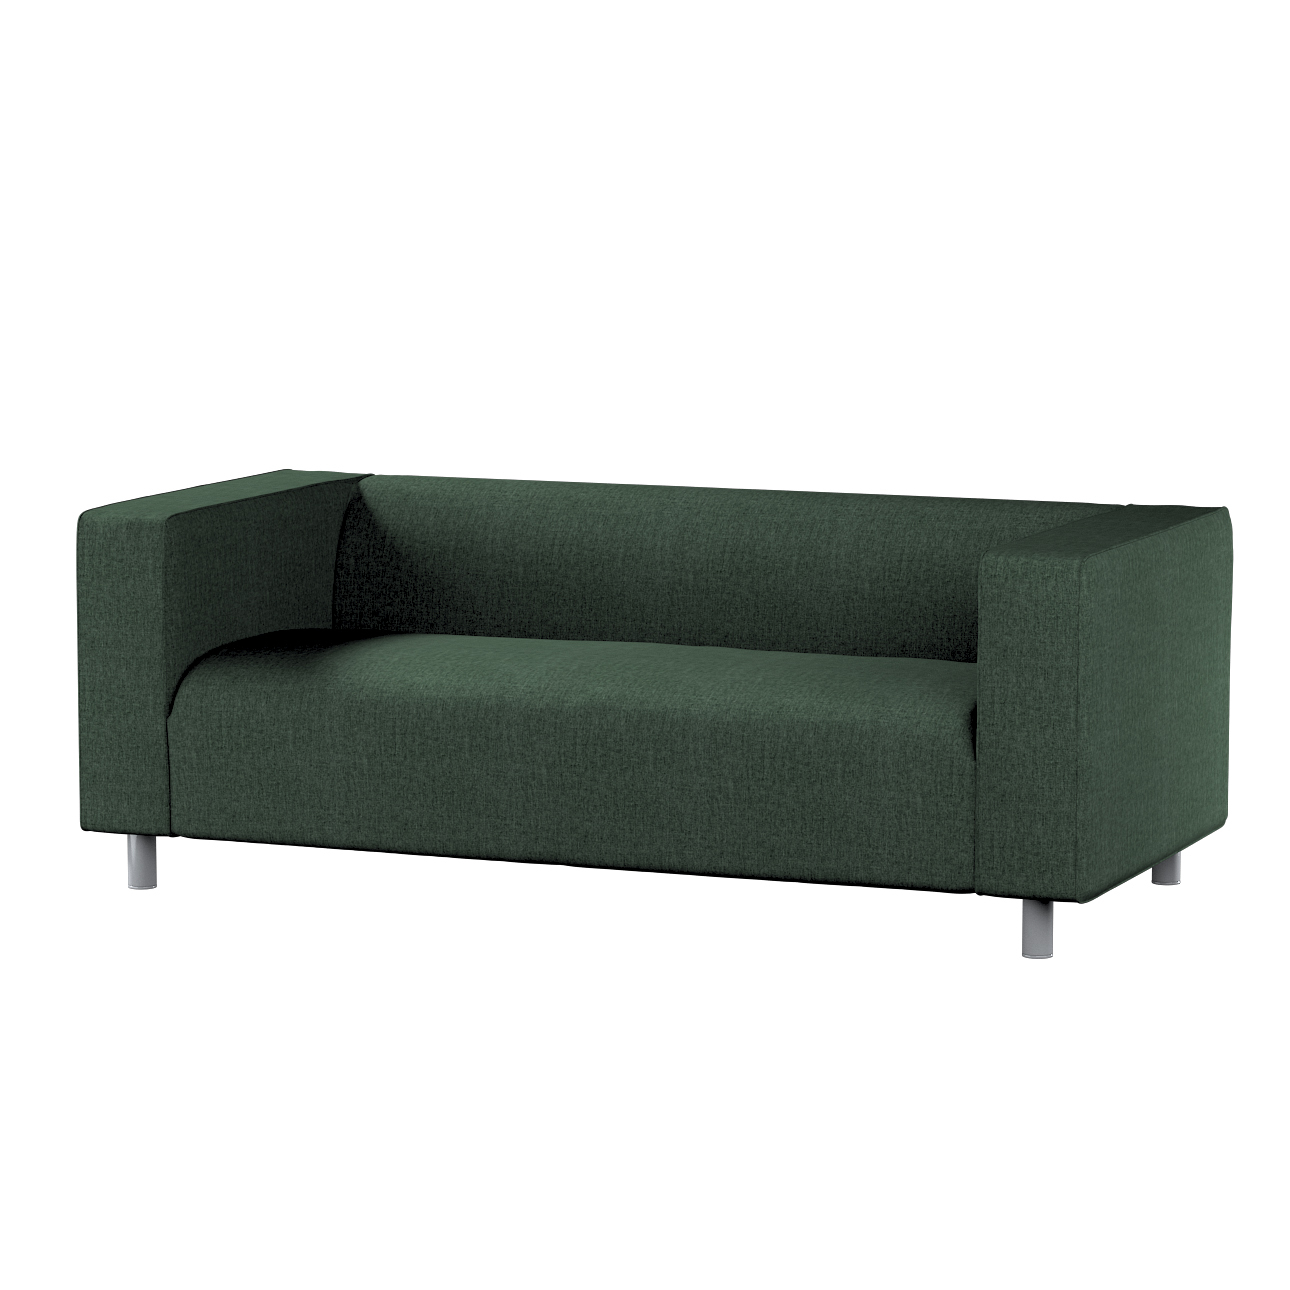 Bezug für Klippan 2-Sitzer Sofa, dunkelgrün, Sofahusse, Klippan 2-Sitzer, C günstig online kaufen